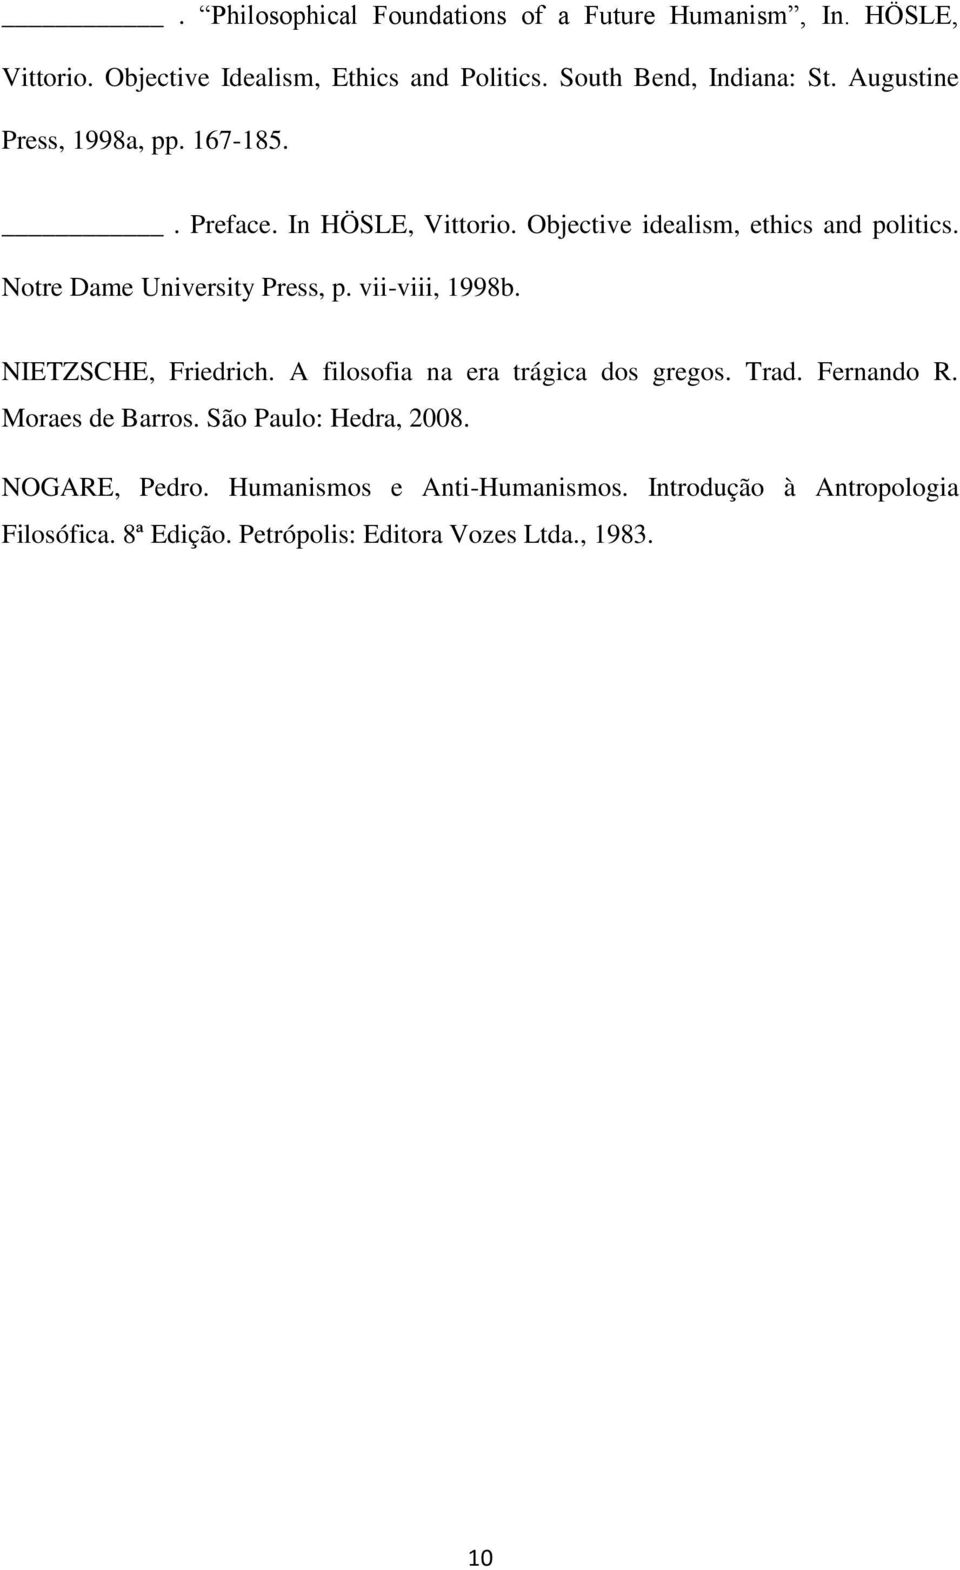 Notre Dame University Press, p. vii-viii, 1998b. NIETZSCHE, Friedrich. A filosofia na era trágica dos gregos. Trad. Fernando R.